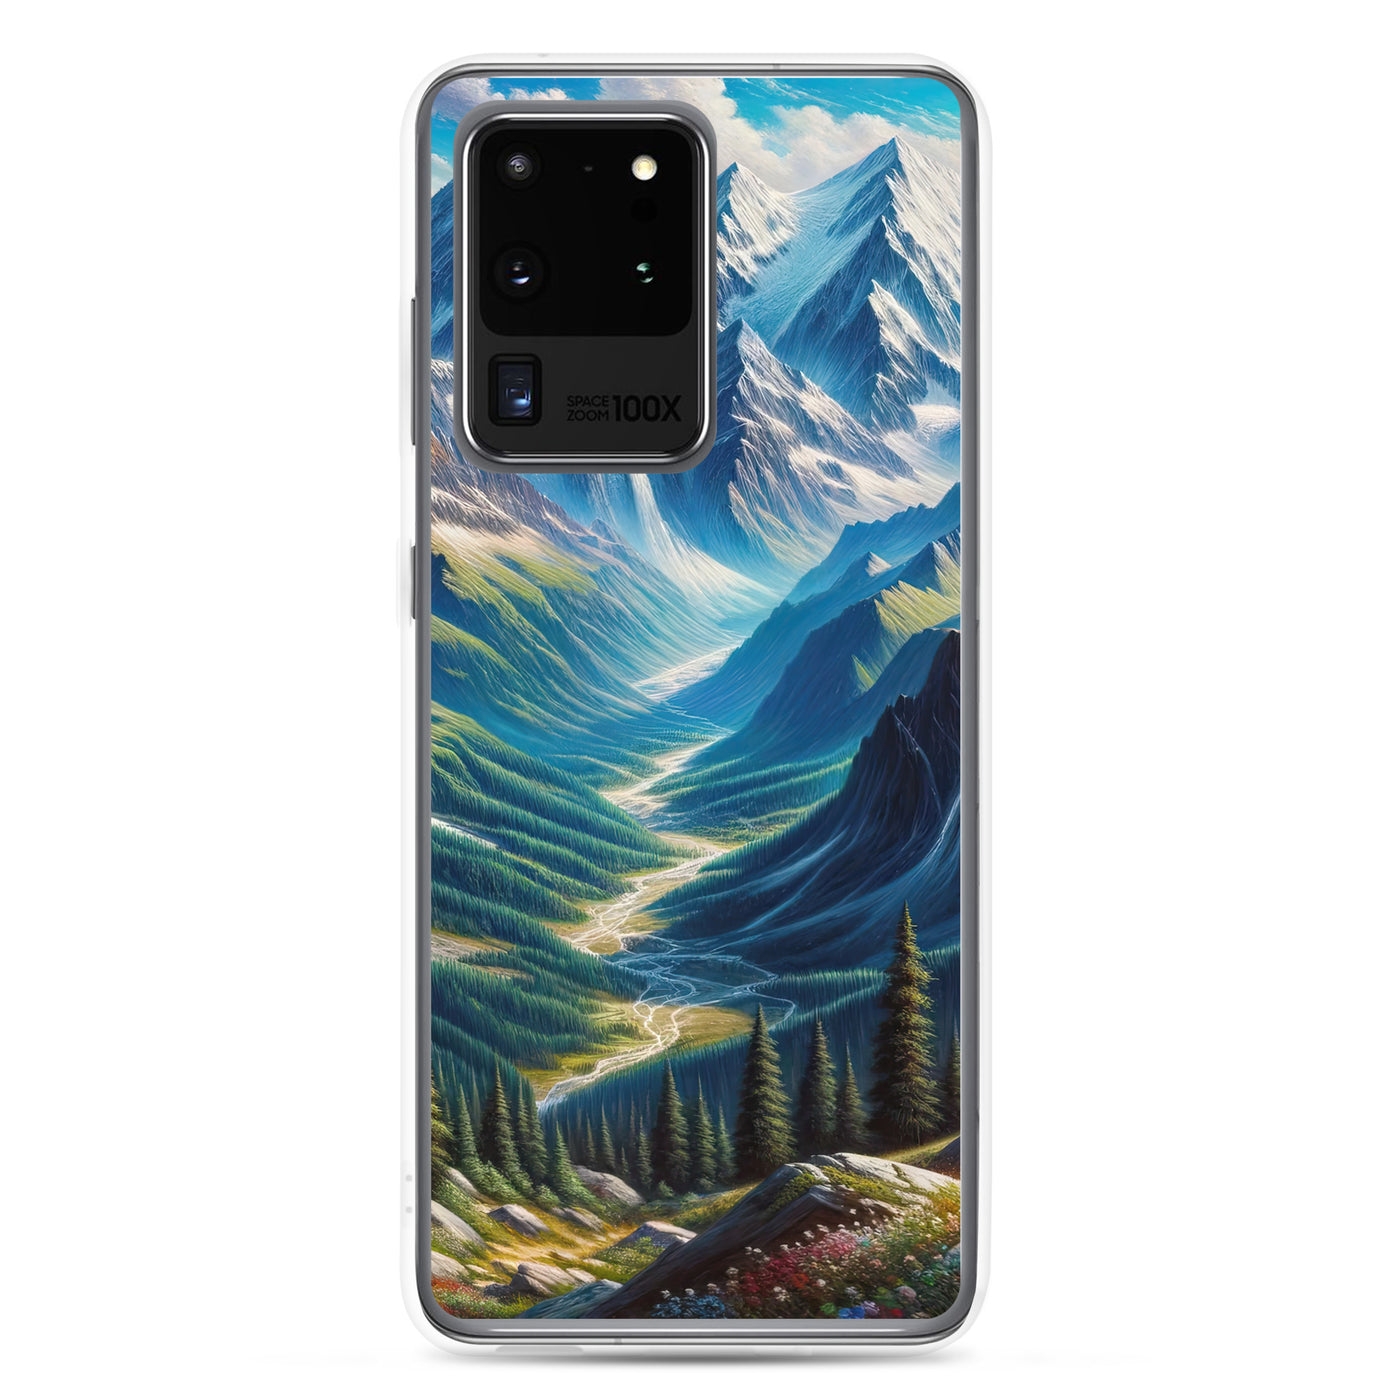 Panorama-Ölgemälde der Alpen mit schneebedeckten Gipfeln und schlängelnden Flusstälern - Samsung Schutzhülle (durchsichtig) berge xxx yyy zzz Samsung Galaxy S20 Ultra